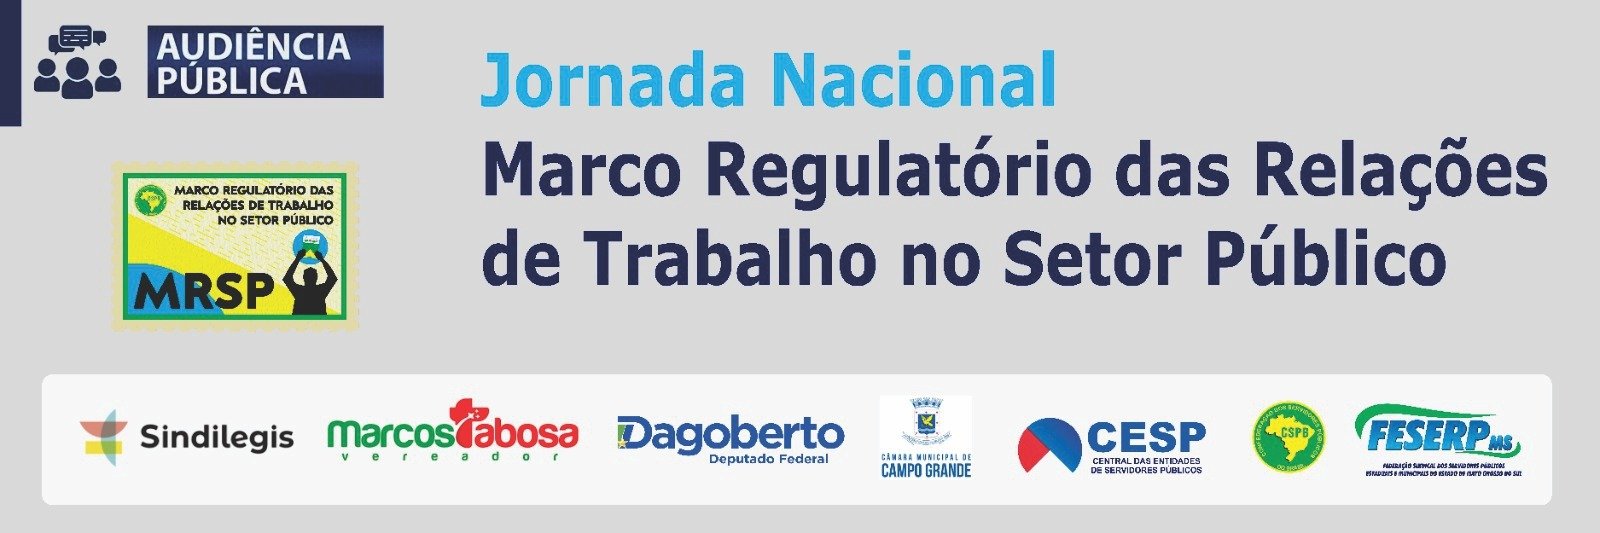 Vereador Tabosa presidirá audiência pública que discutirá o Marco Regulatório das Relações do Trabalho no Setor Público